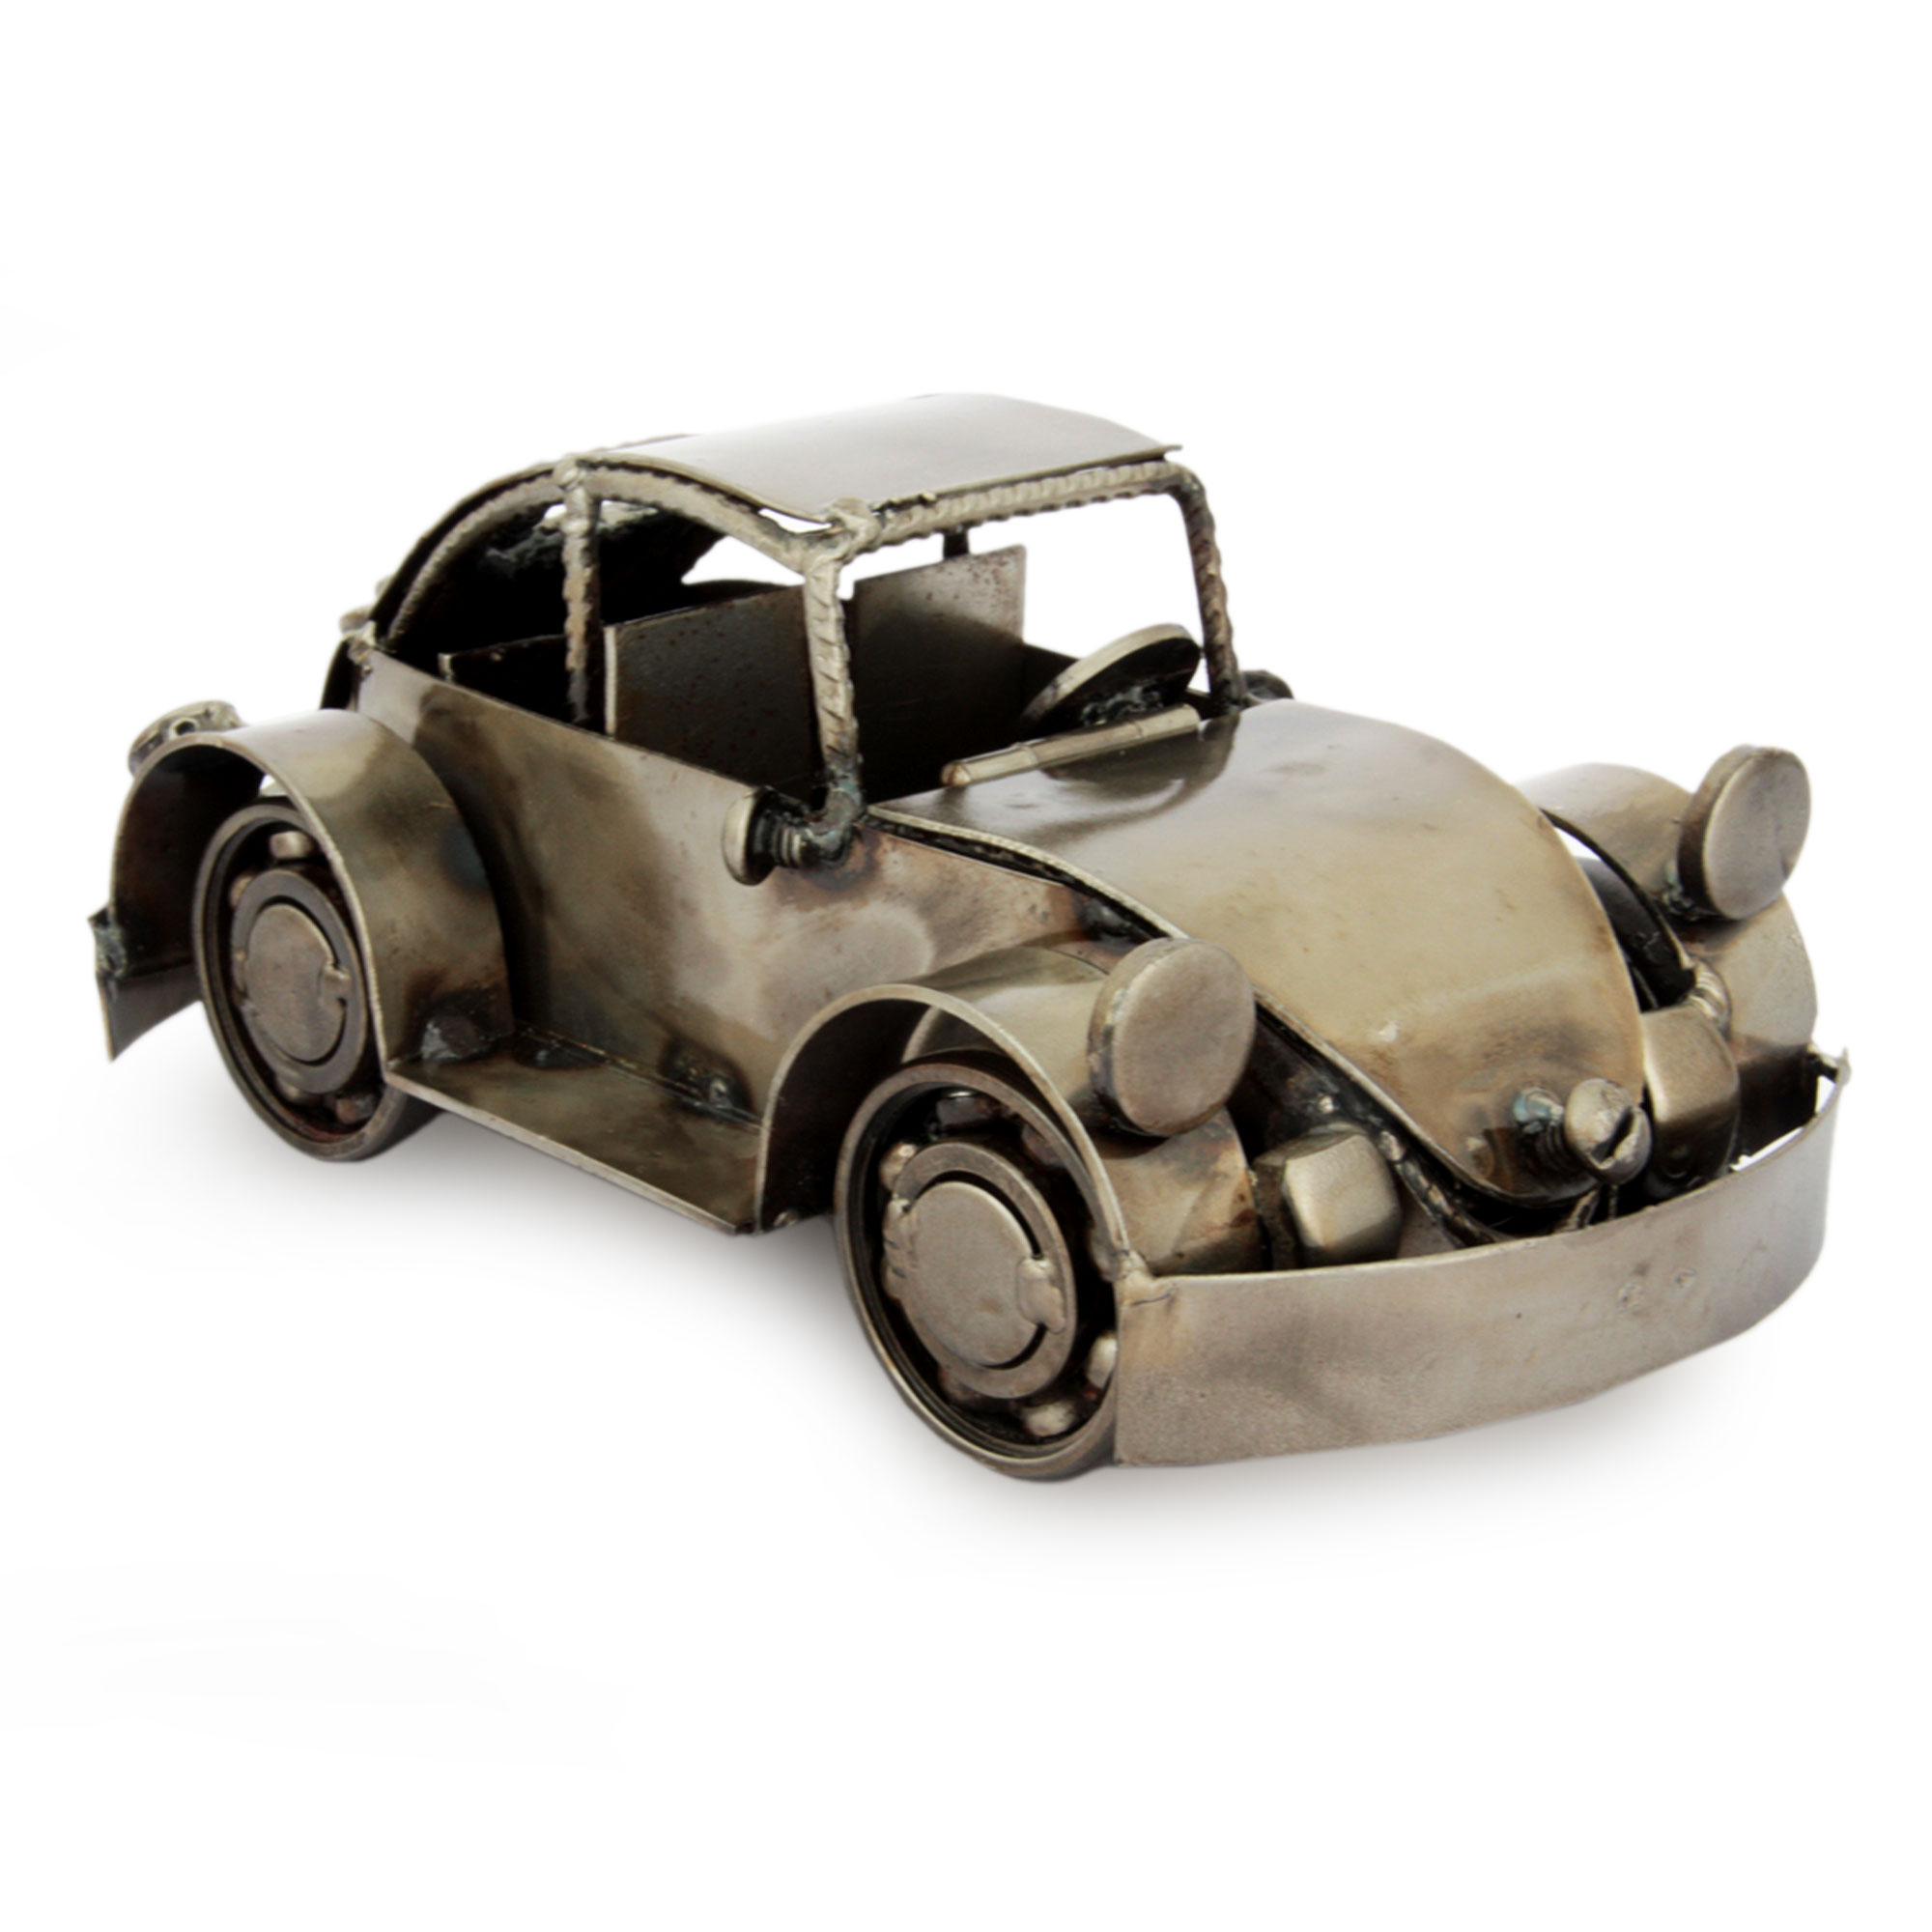 Toy car rust фото 115